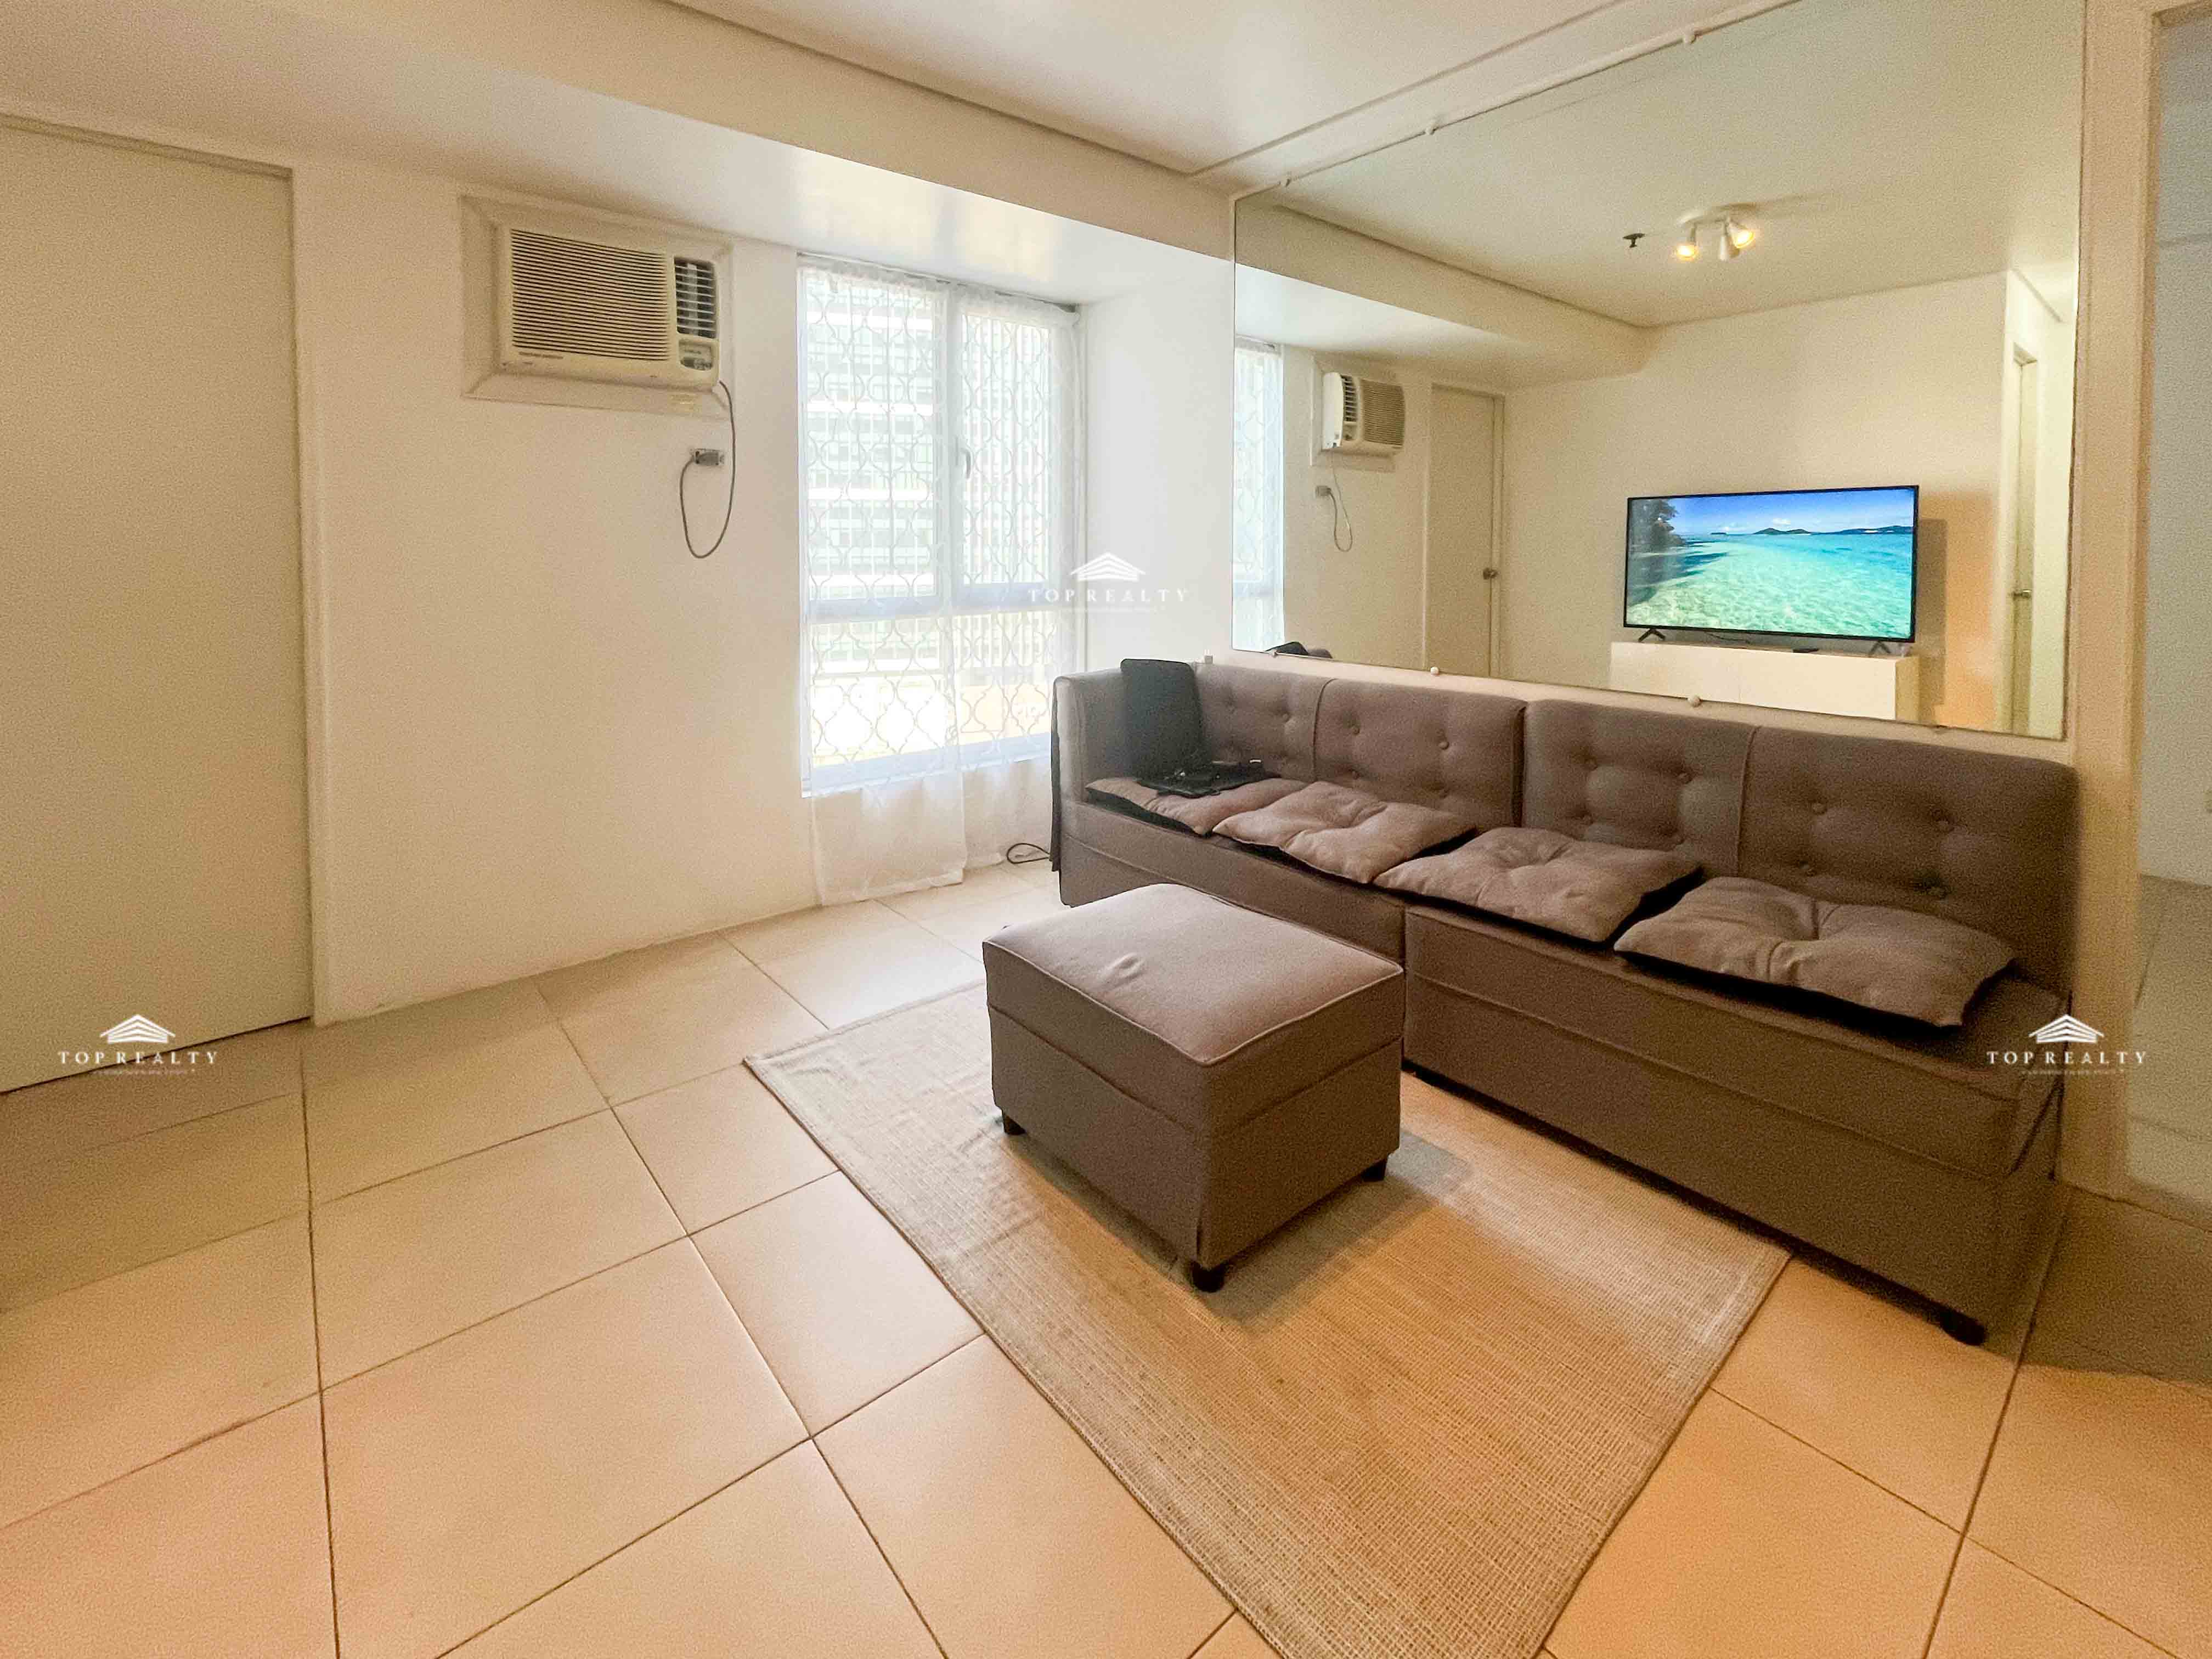 For Rent: 2 Bedroom Condominium in Avida 34th, BGC, Taguig City